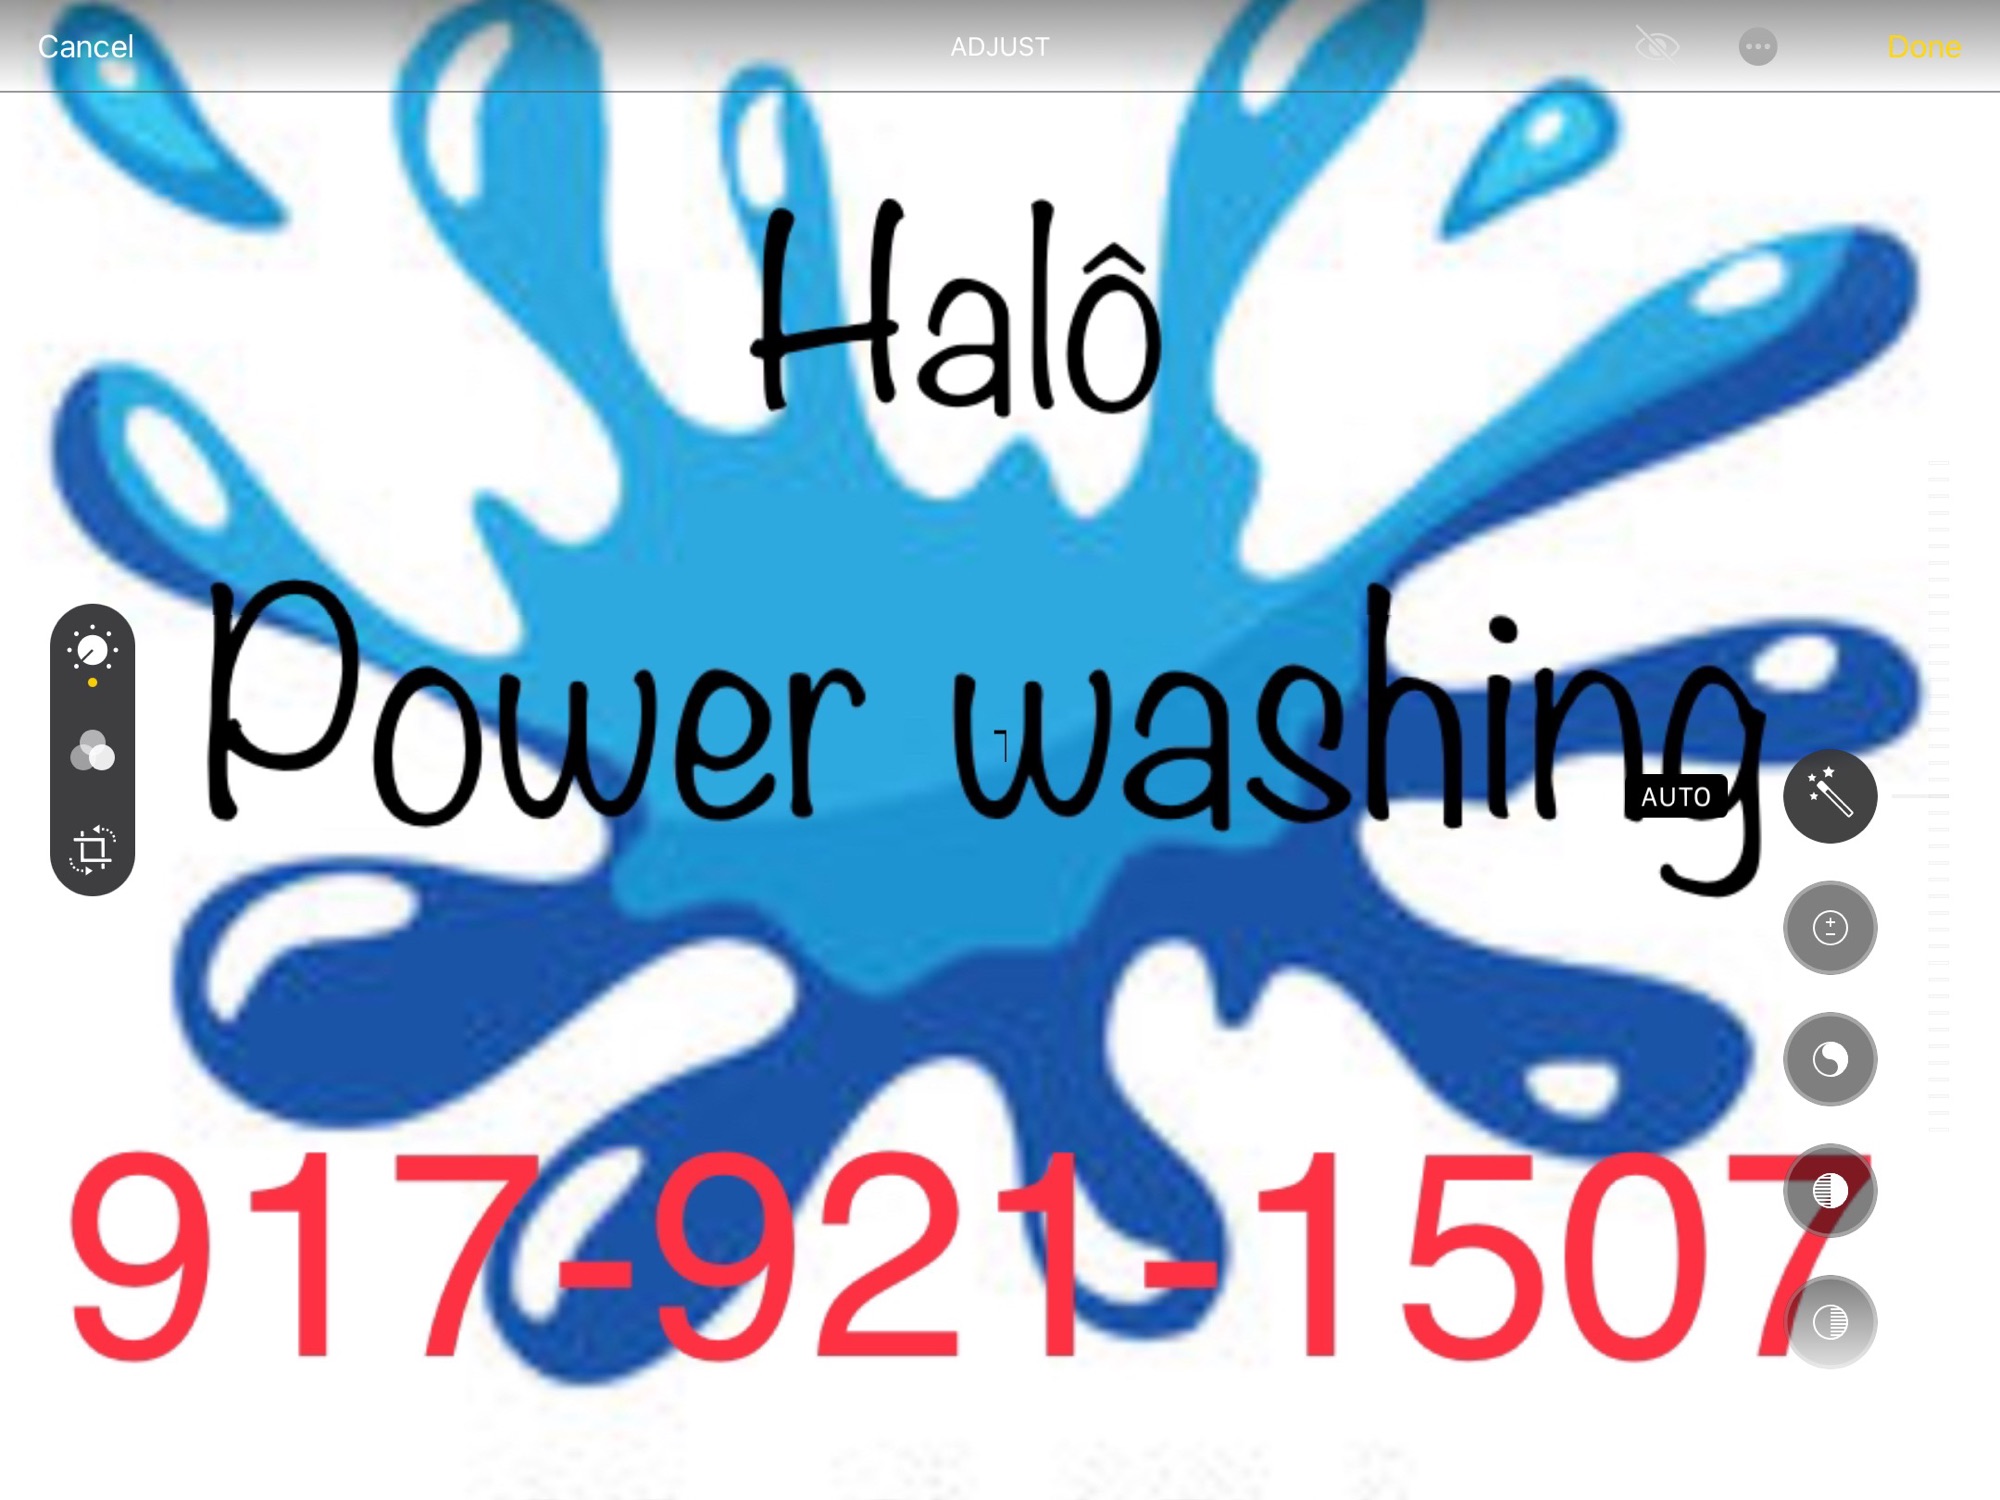 Halo Power Washing & Painting Logo